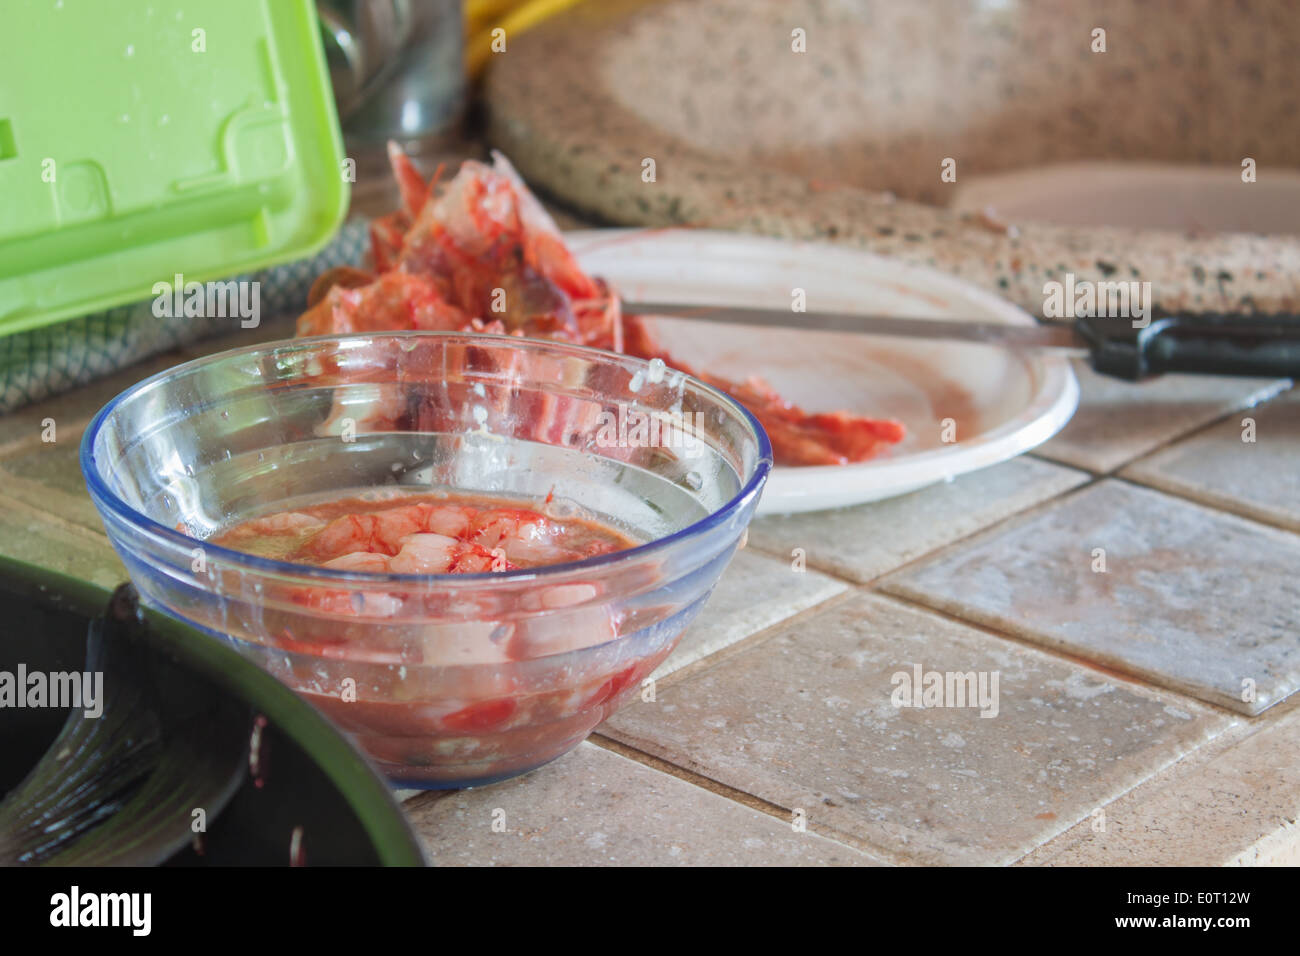 Preparar marisco limpiar basura camarones plato taza cocina home closeup Cook La cocina nadie Foto de stock